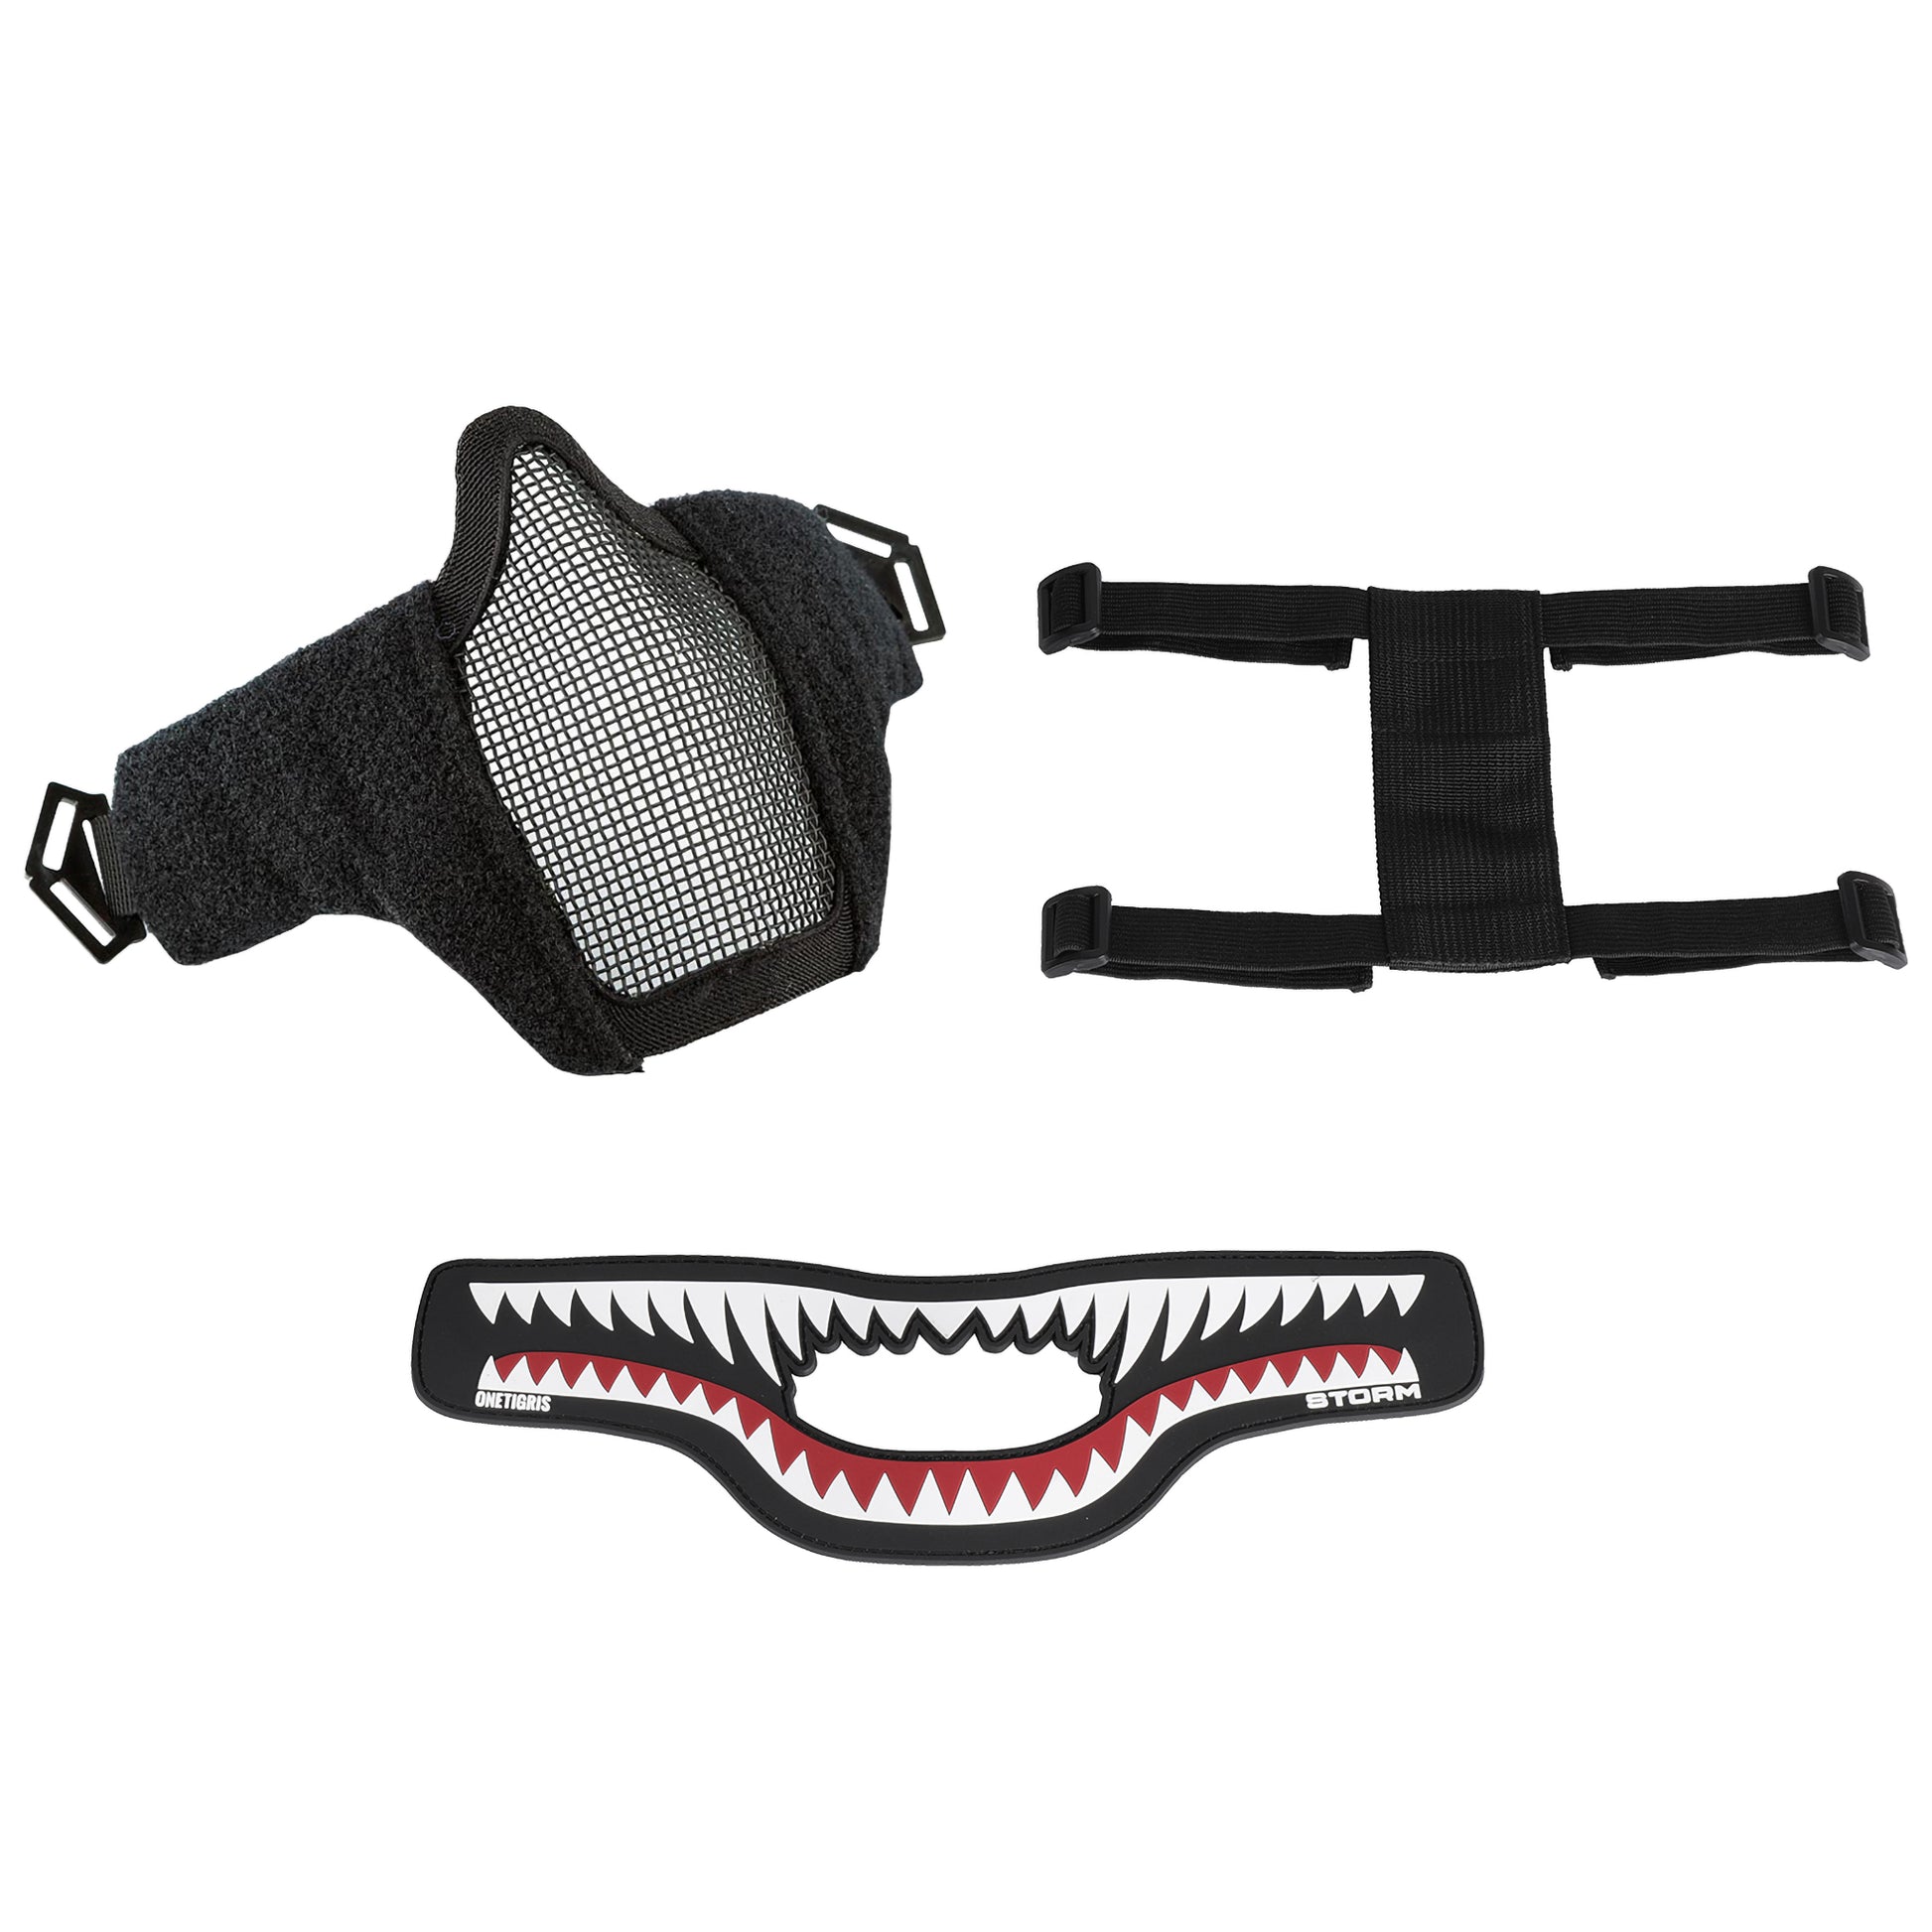 Storm Airsoft Mask Set – 1TG Tactical